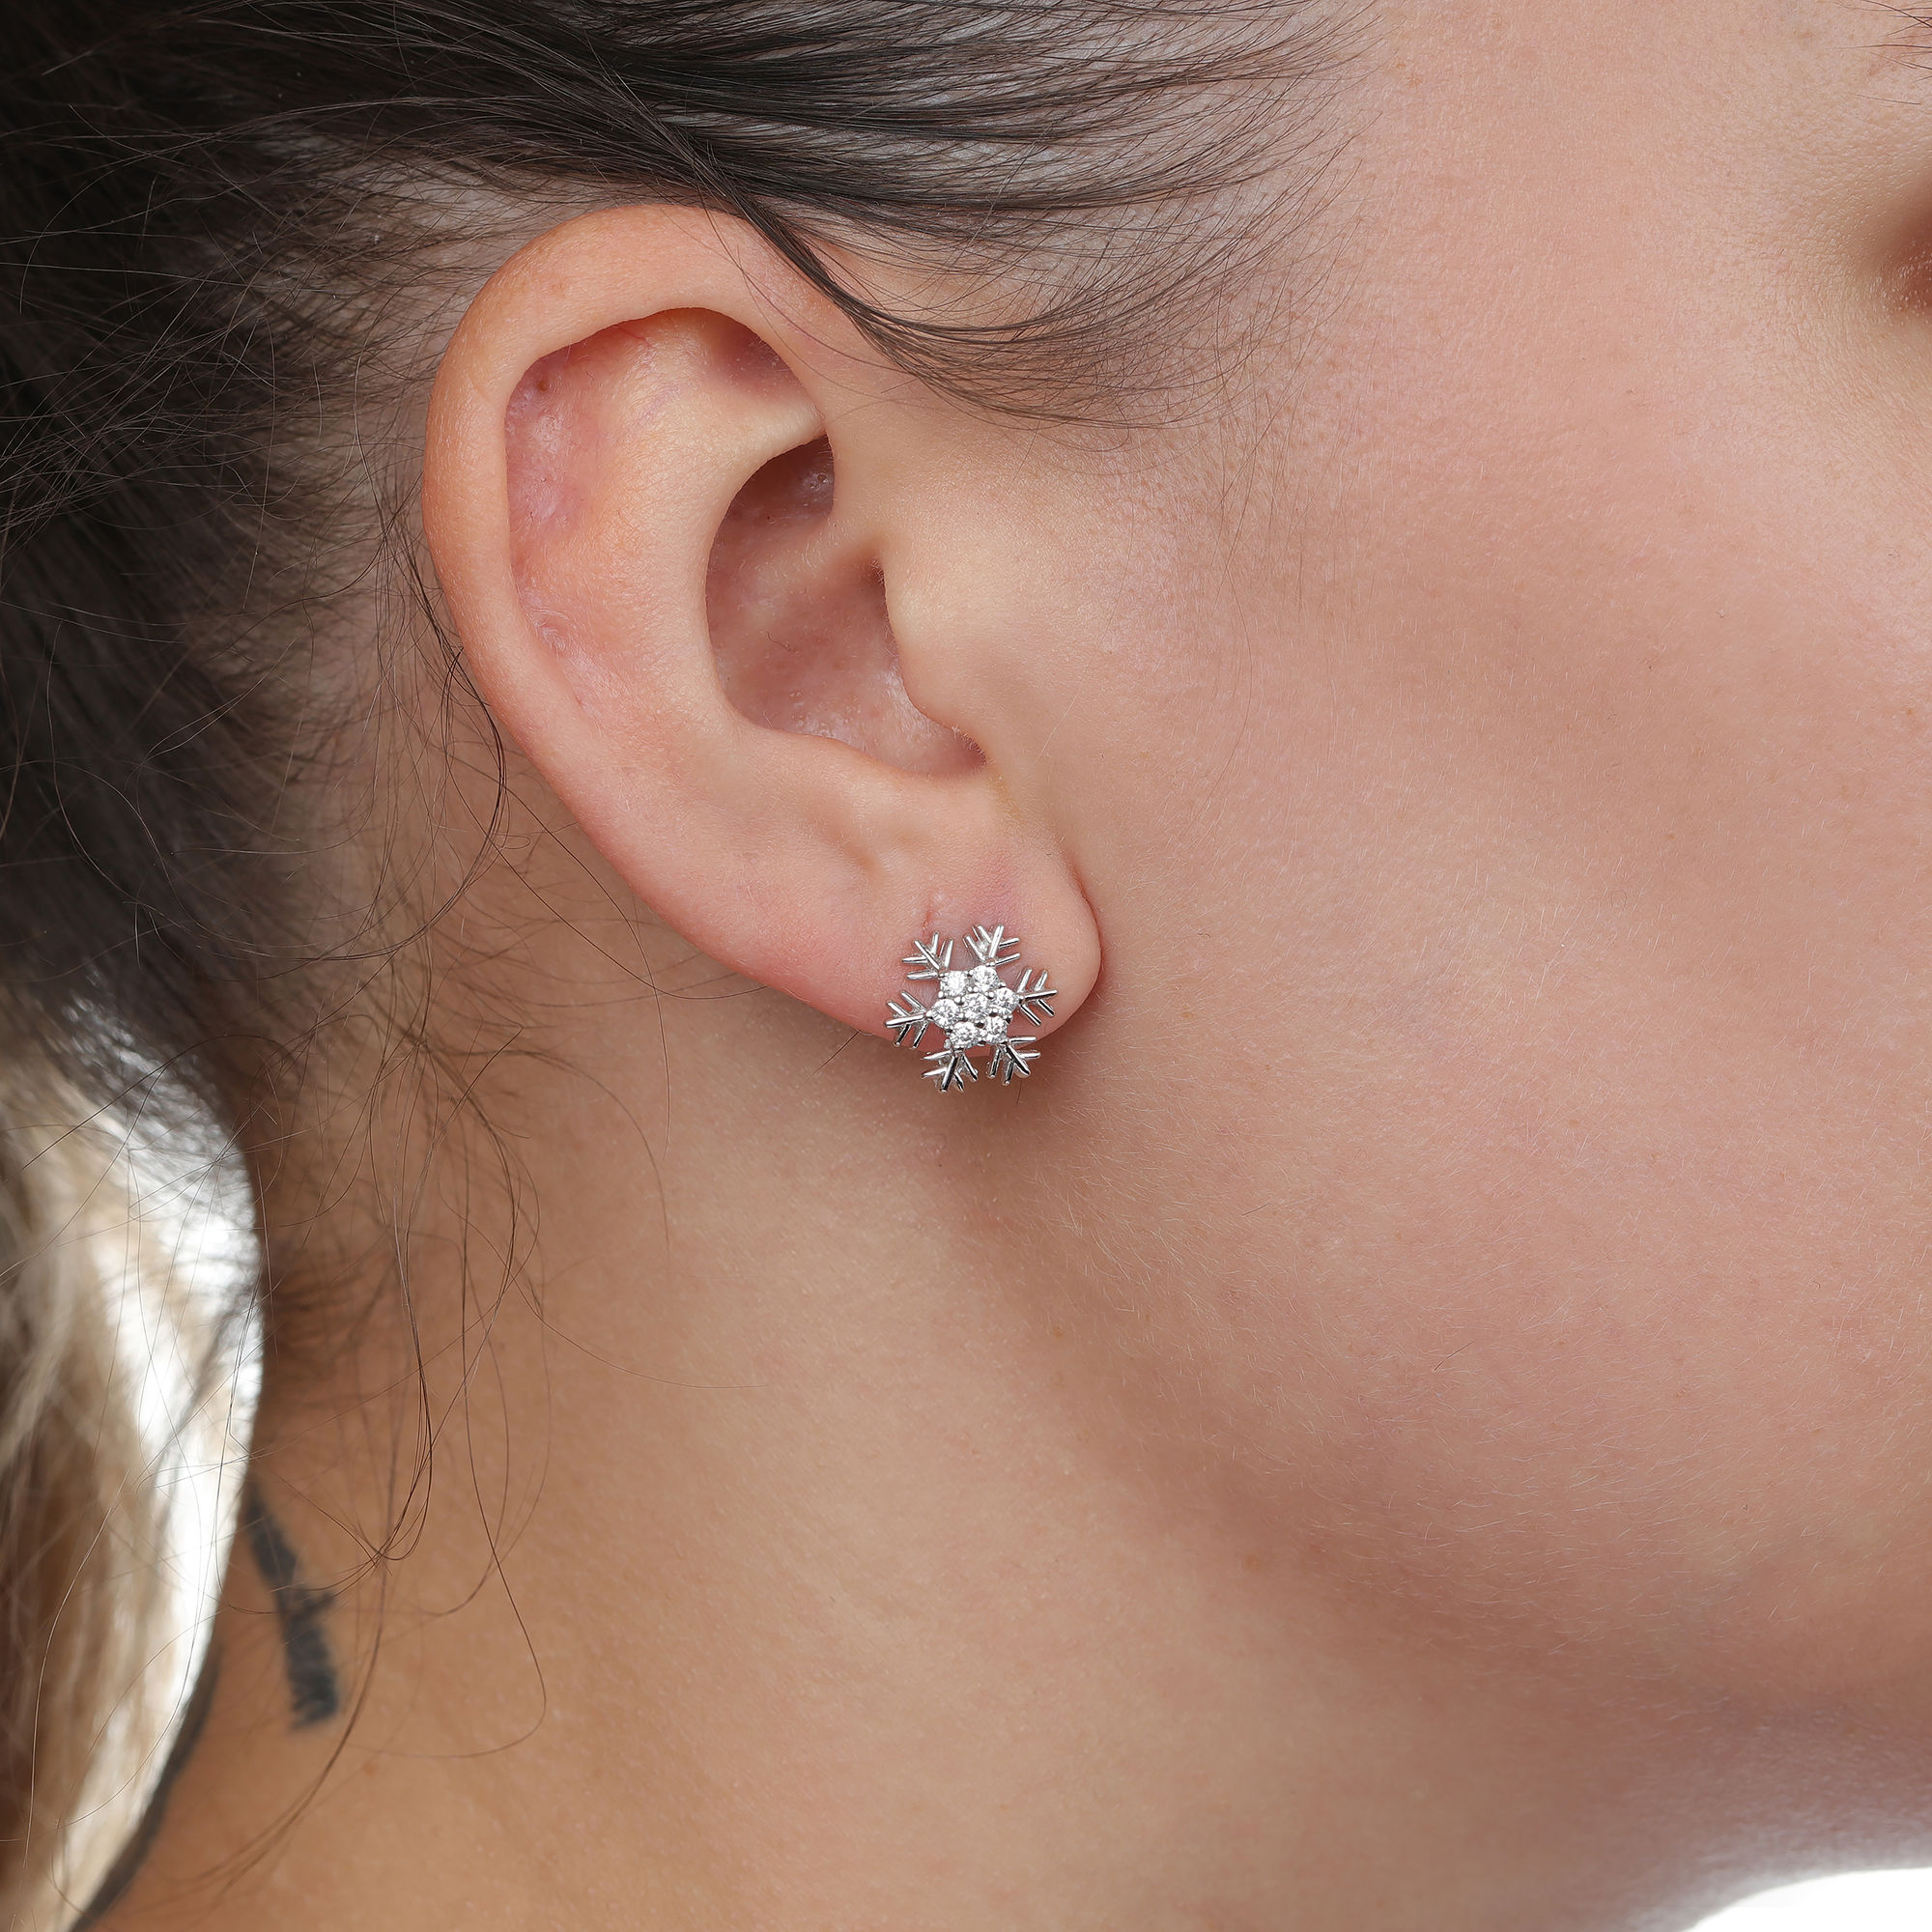 49183-earrings-fashion-jewelry-sterling-silver-49183-2.jpg